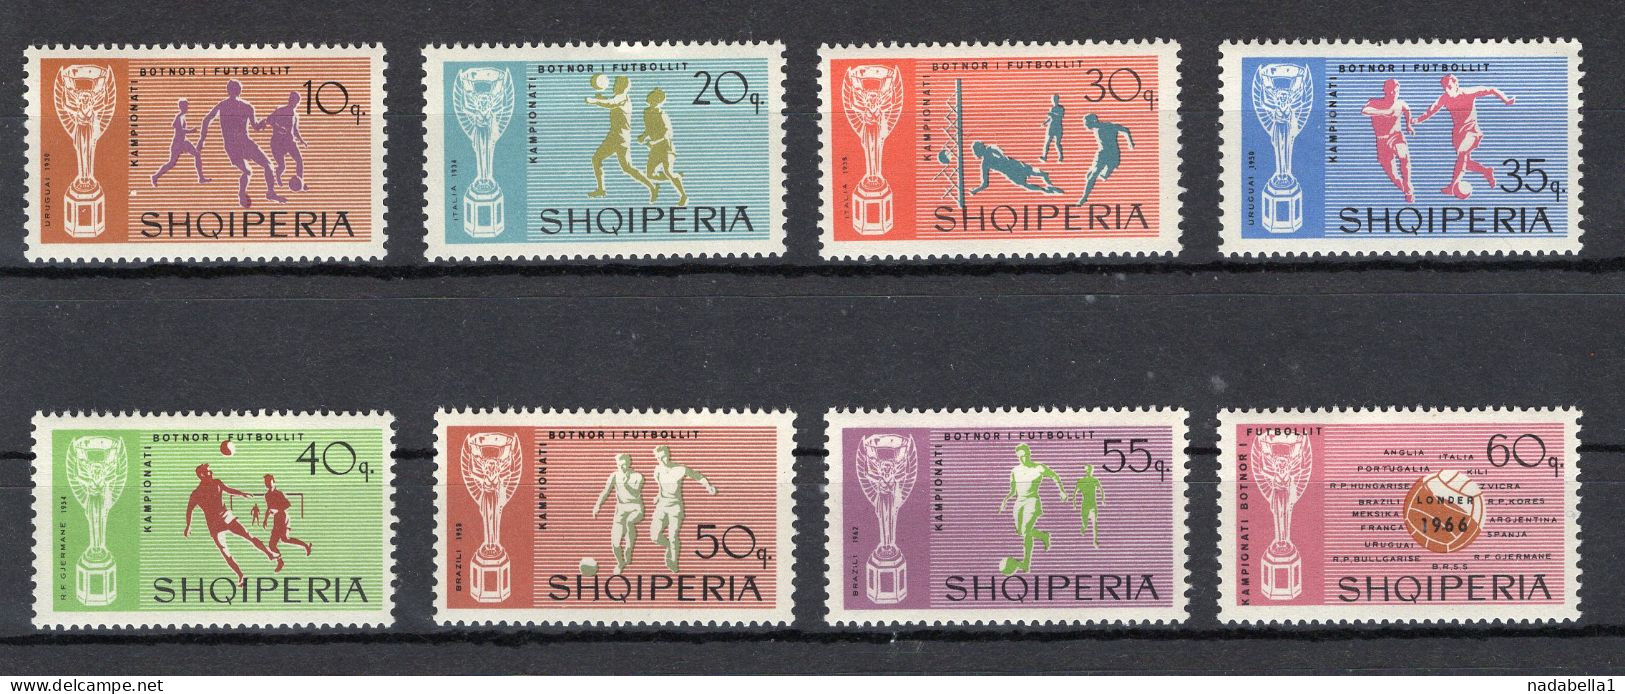 1966. ALBANIA,ENGLAND,LONDON FOOTBALL WORLD CUP,SET OF 8 STAMPS,MNH - Albania